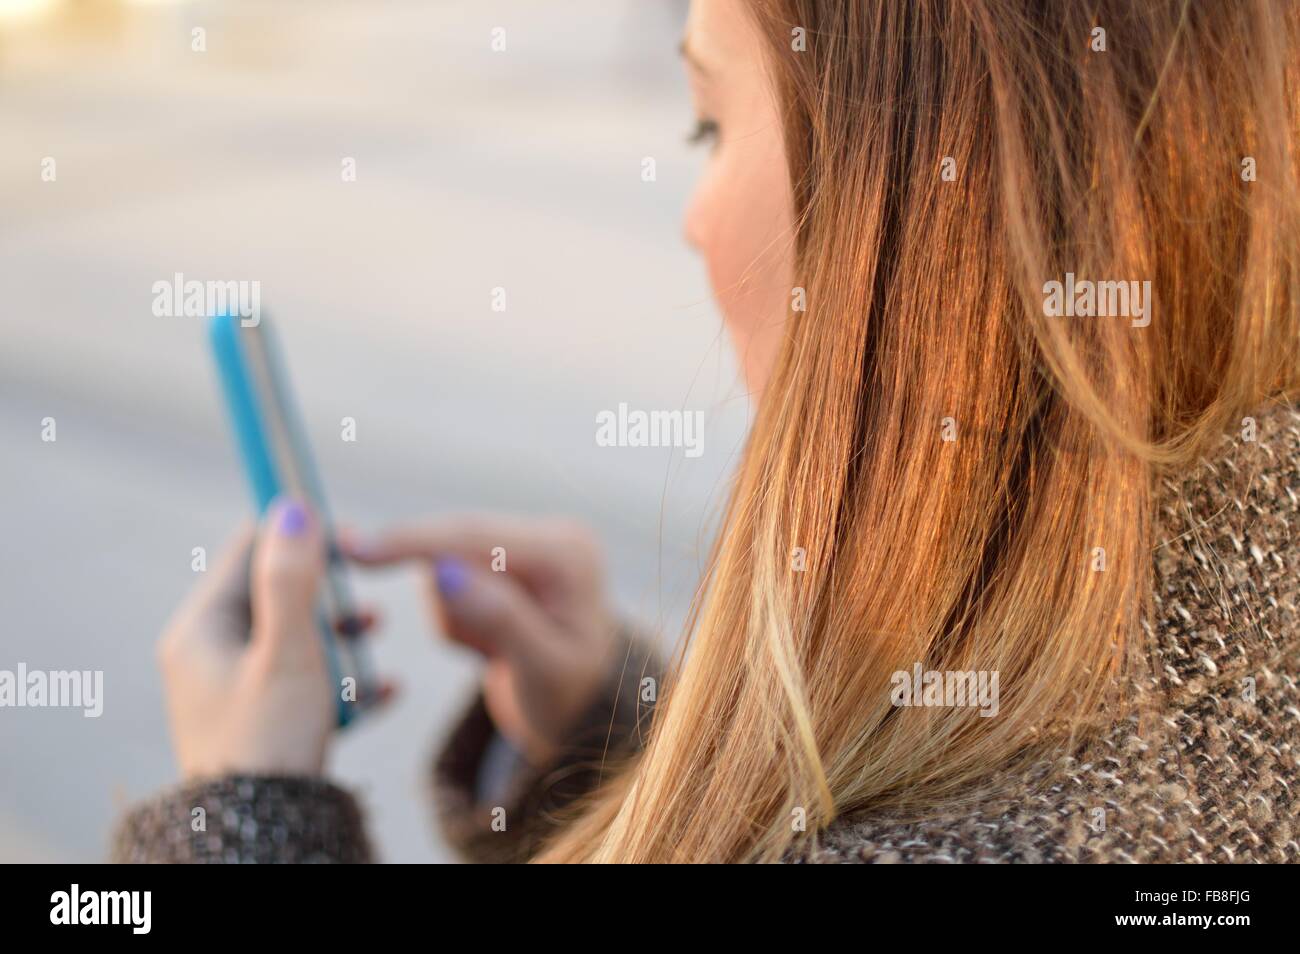 Immagine ritagliata della donna tramite telefono cellulare Foto Stock